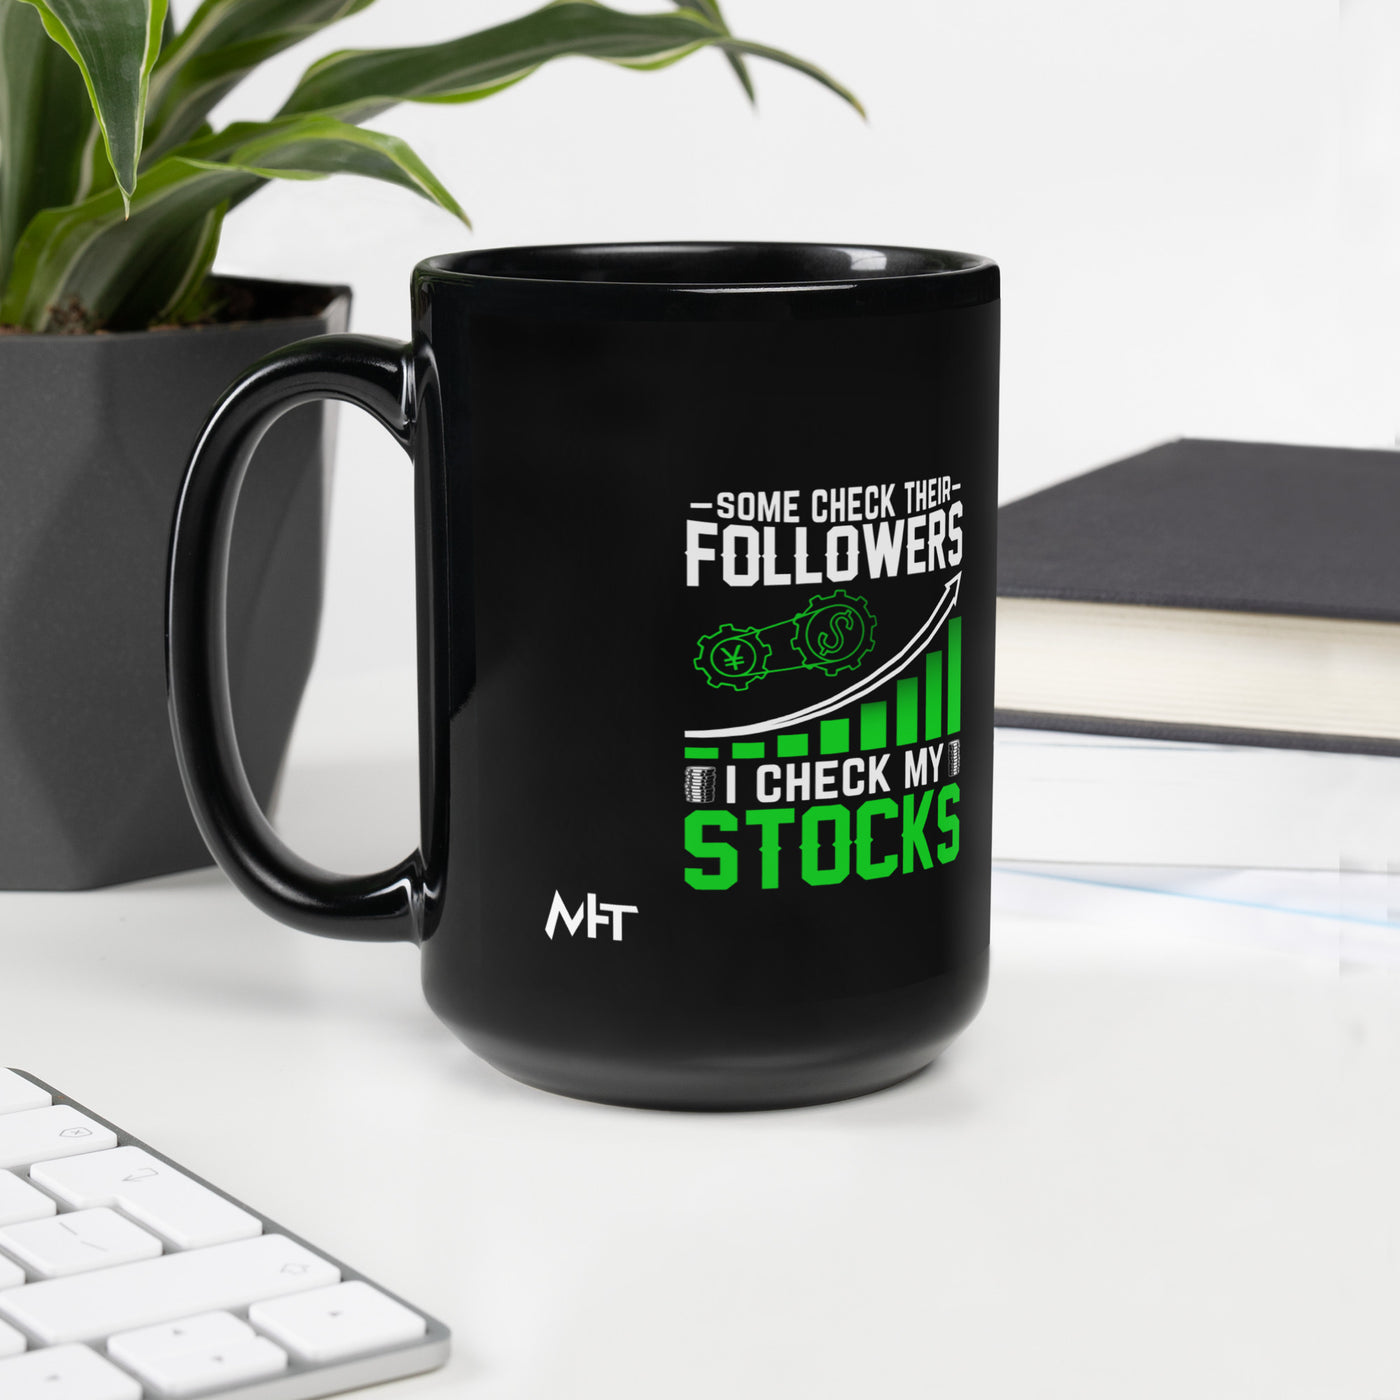 Some Check their followers; I Check my Stocks - Black Glossy Mug